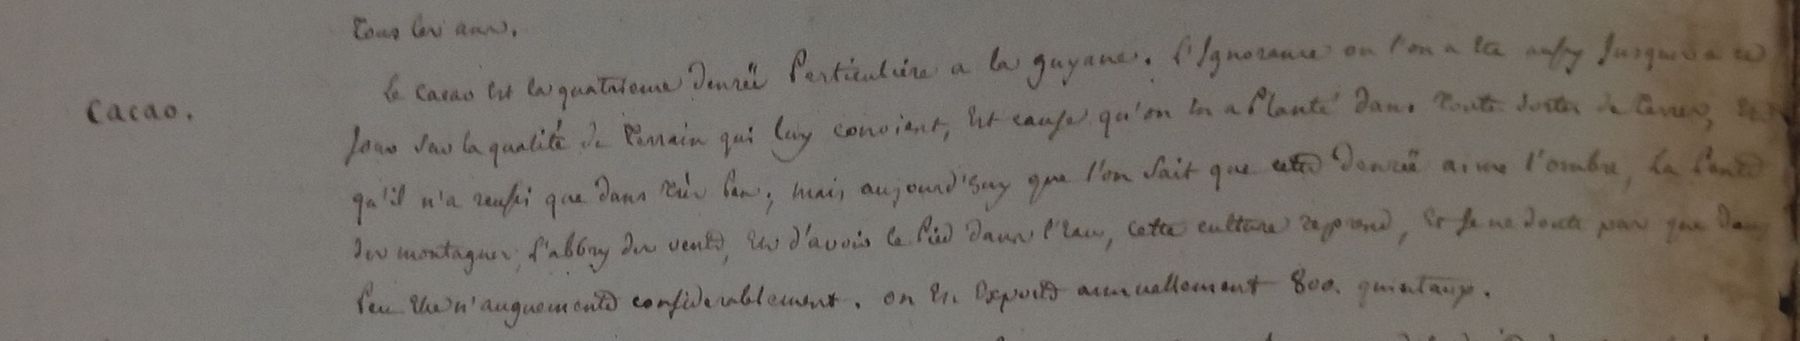 Extrait de la Mémoire sur la Guyane française rédigé par M Delacroix, intendant des colonies, 1775.